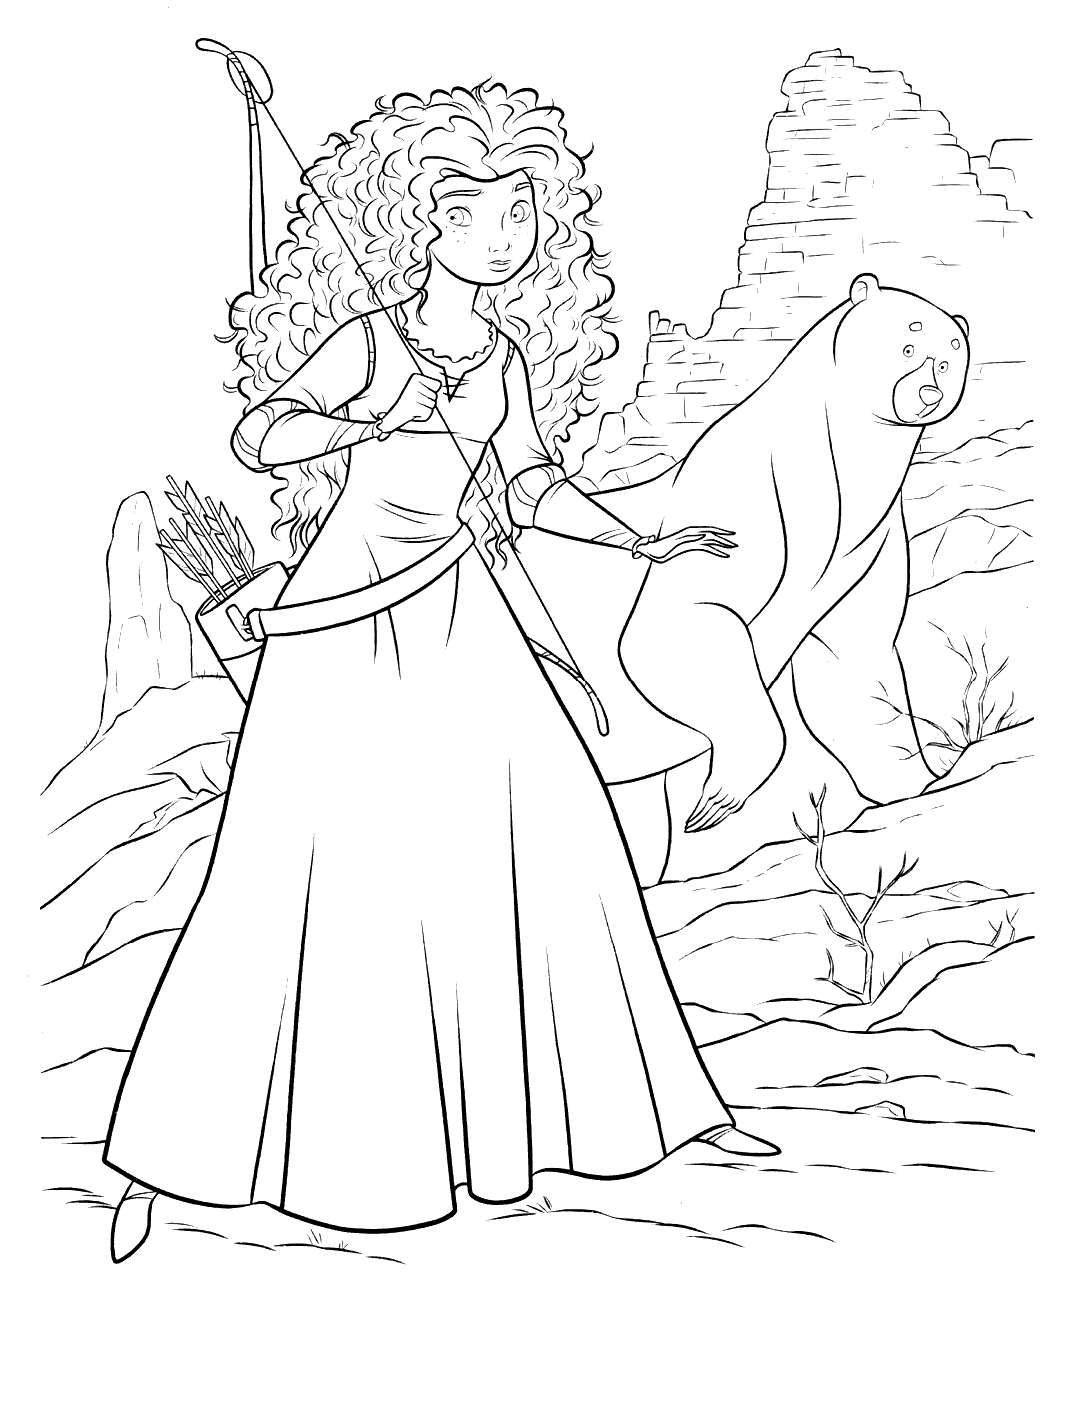 Merida e a sua mãe transformadas em urso pelo feitiço da bruxa!